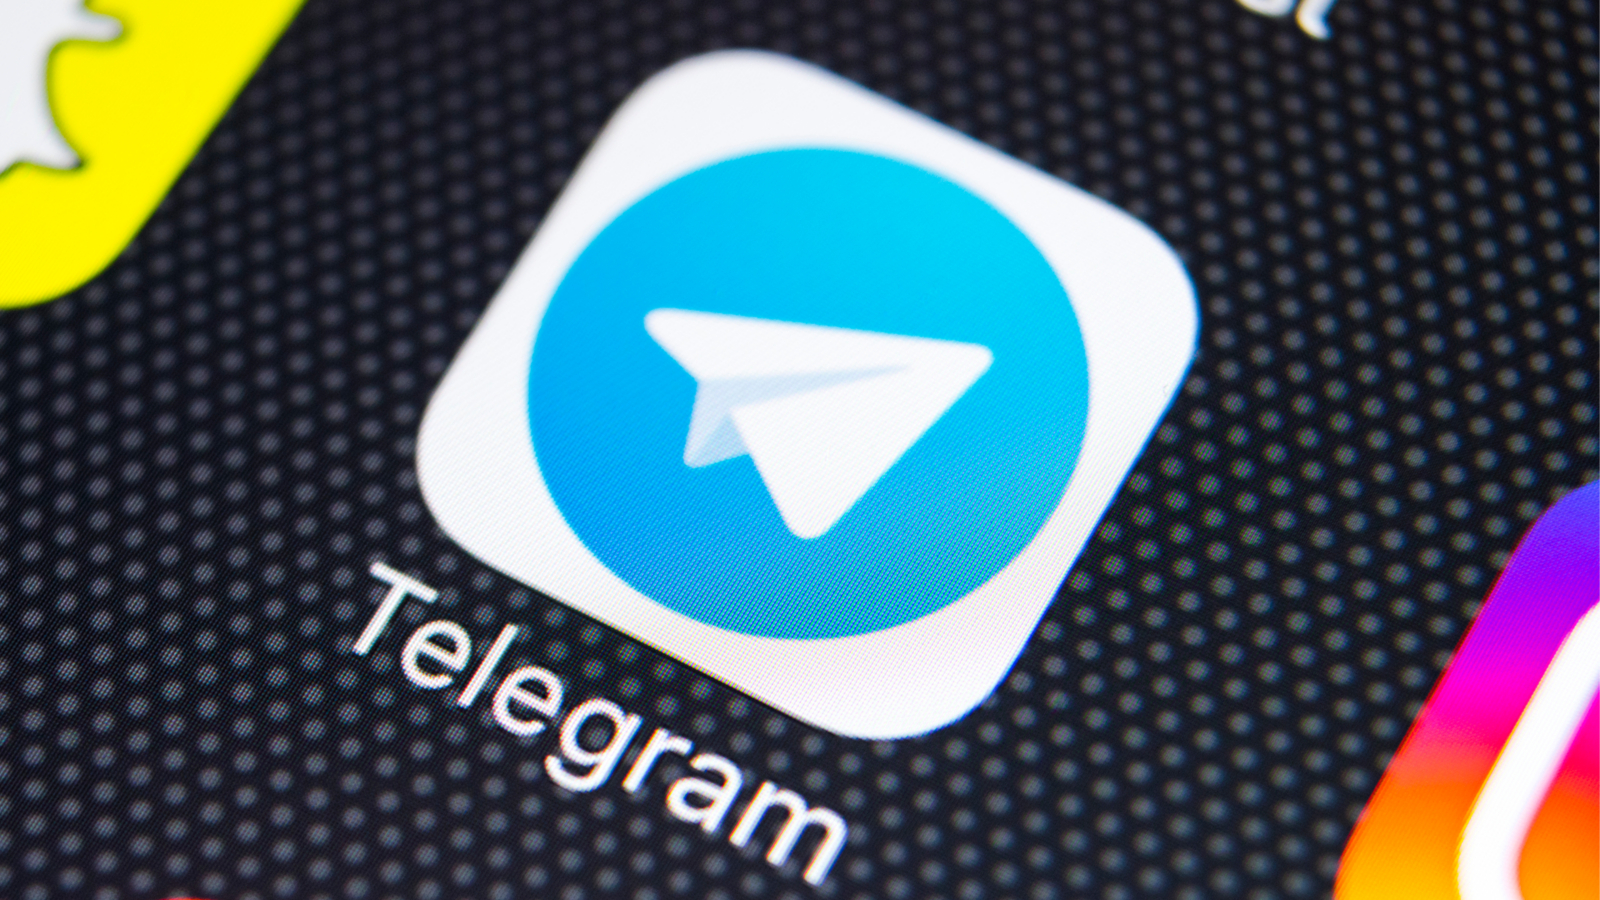 Après Parler, la messagerie Telegram est accusée d'héberger des contenus haineux